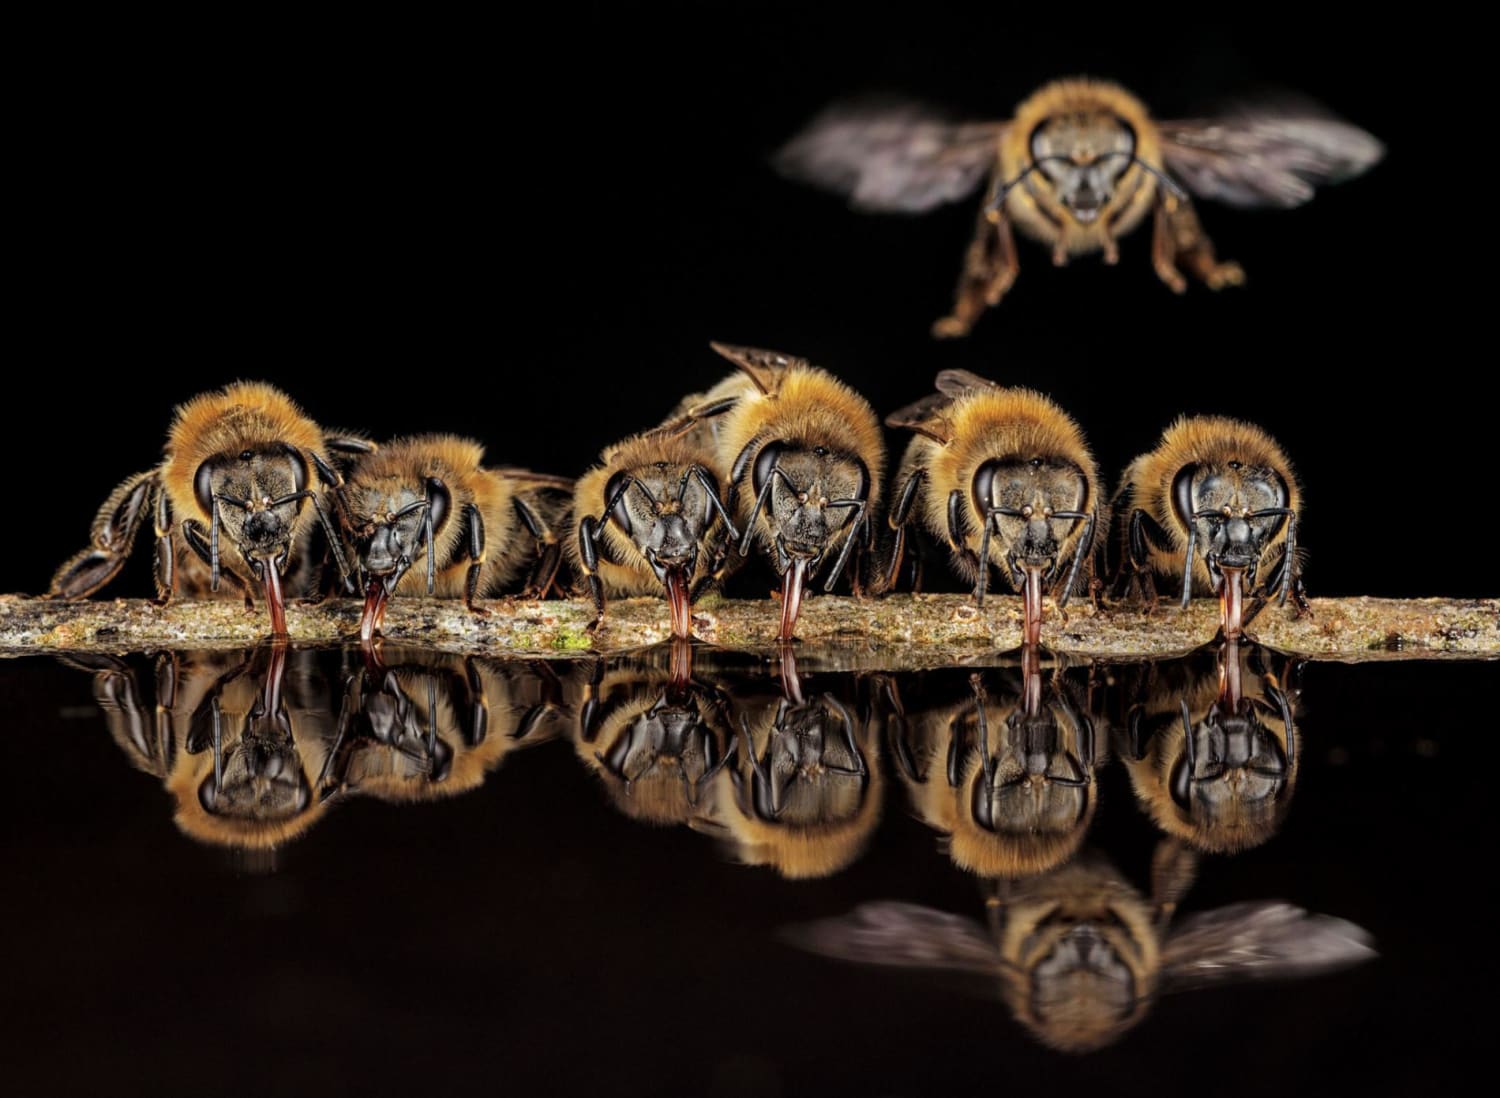 PsBattle: Honeybees drinking